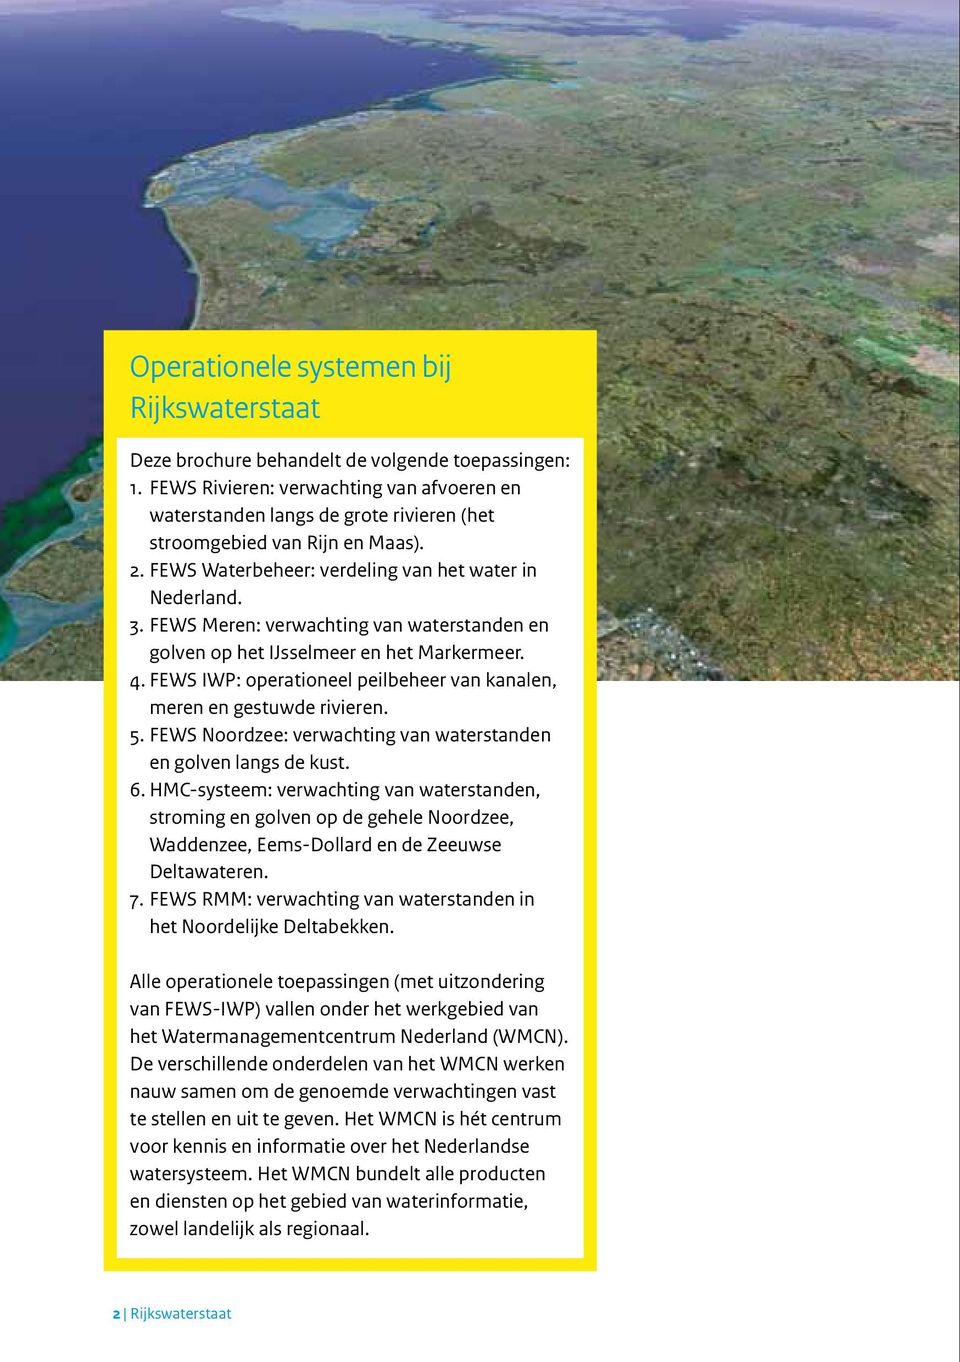 FEWS Meren: verwachting van waterstanden en golven op het IJsselmeer en het Markermeer. 4. FEWS IWP: operationeel peilbeheer van kanalen, meren en gestuwde rivieren. 5.